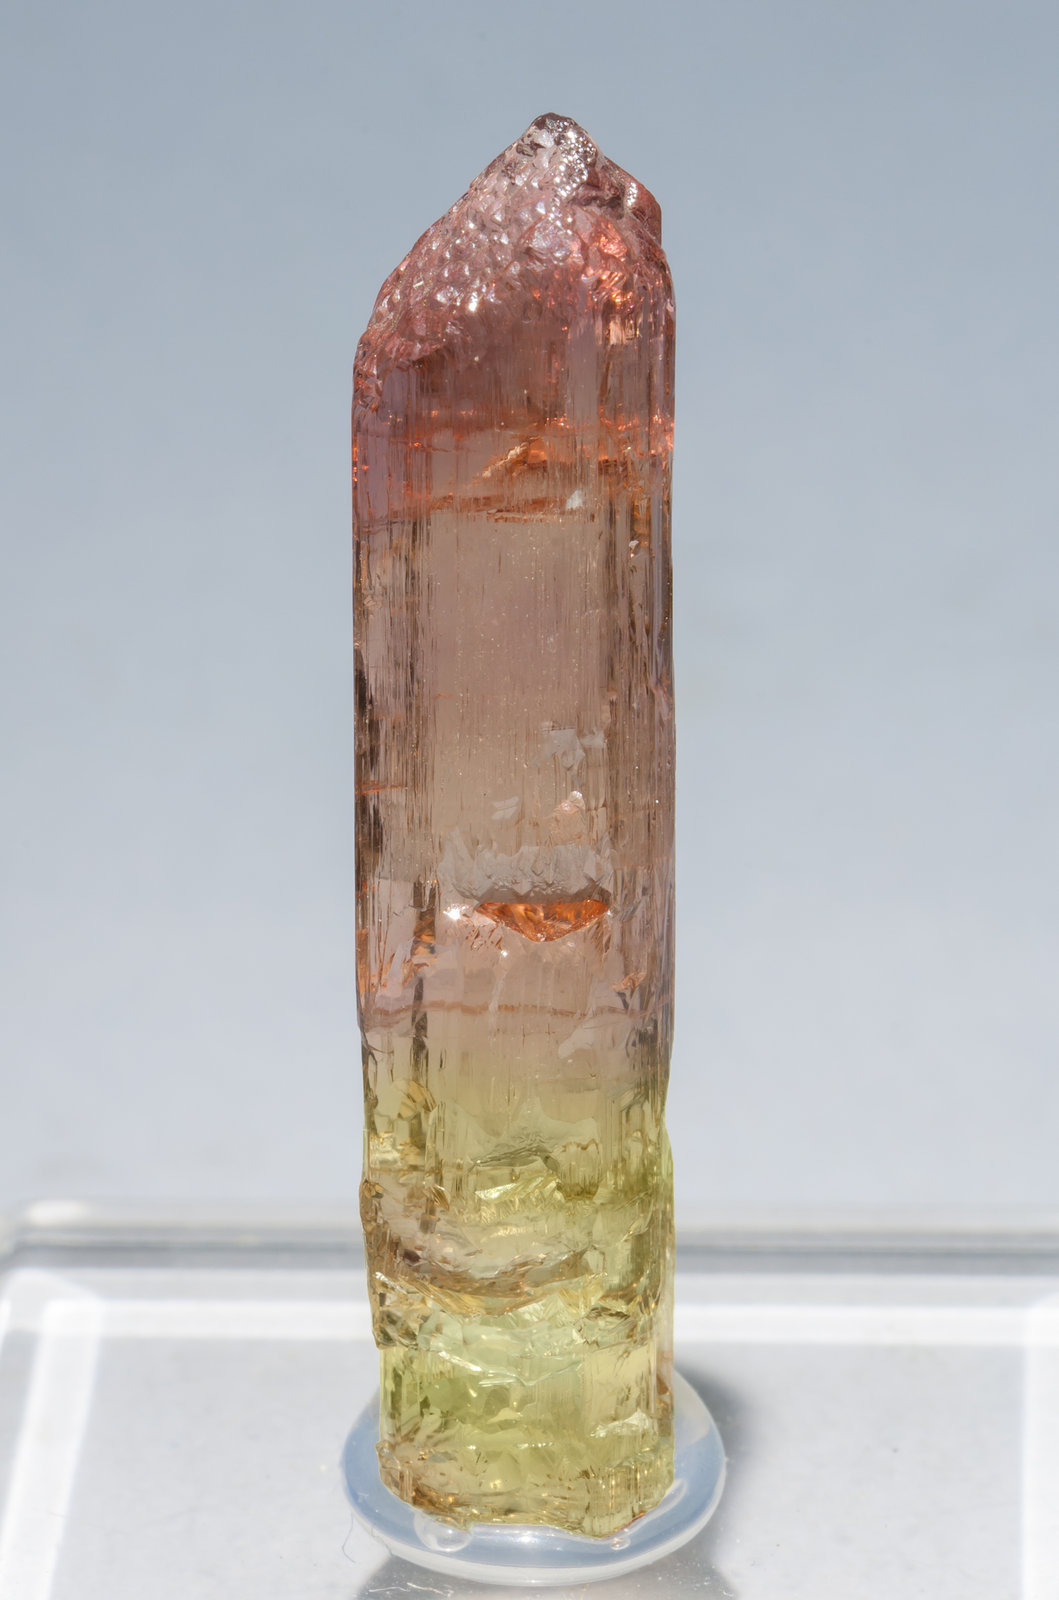 specimens/s_imagesM5/Tricolor_Elbaite-TW47M5.jpg